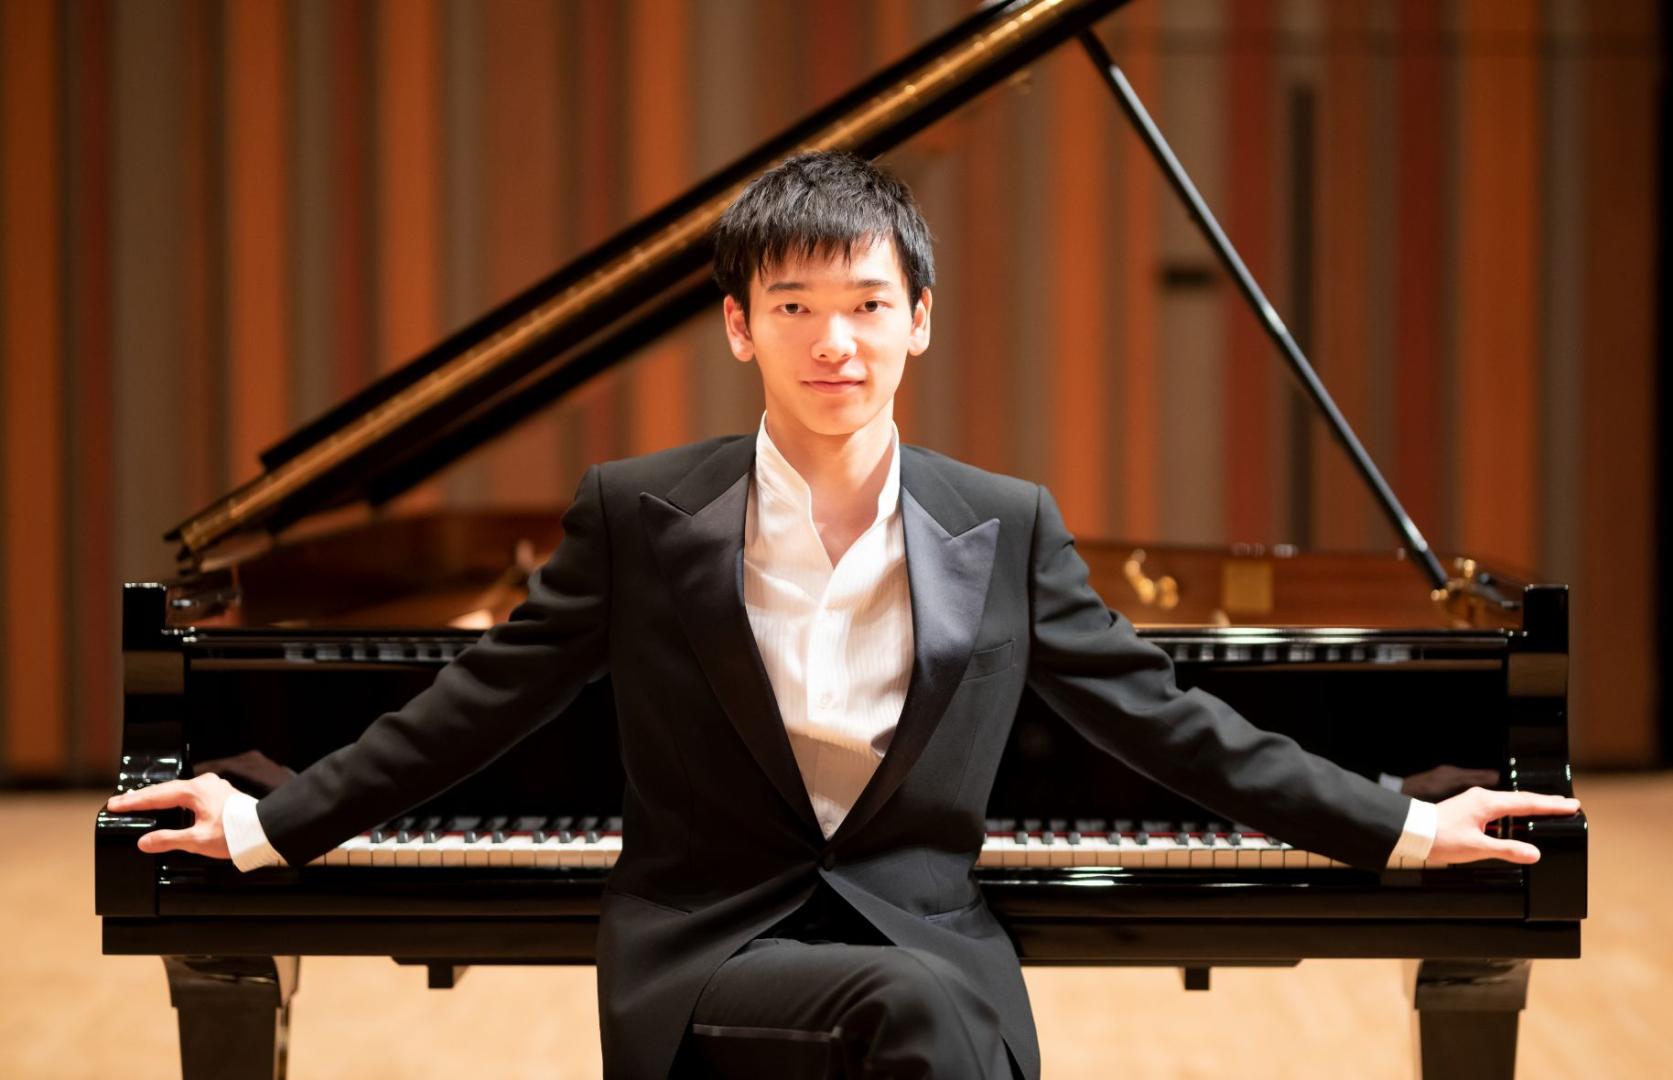 Concerto pianistico a cura di DAIZUKE YAGI.